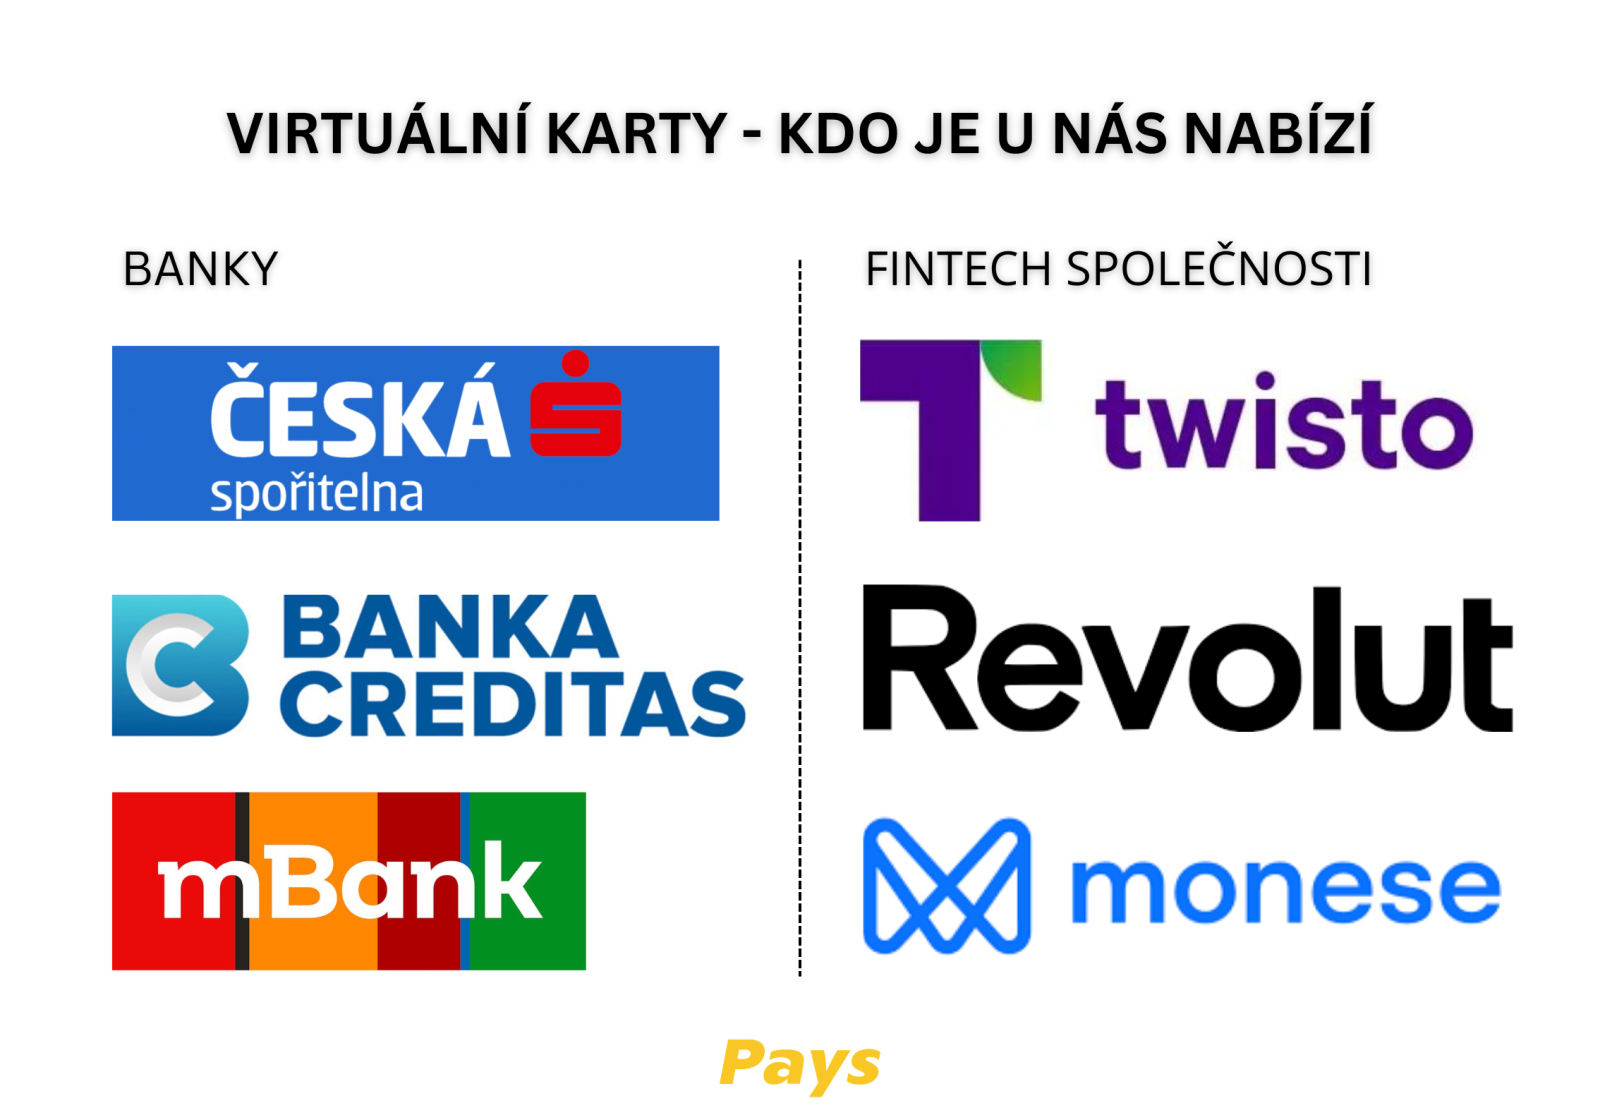 Na obrázku jsou tři banky a FinTech společnosti, u kterých je v rámci služeb k dispozici i virtuální karta: Česká Spořitelna, Banka Creditas, mBank, Twisto, Revolut, Monese. Více informací přímo v článku.